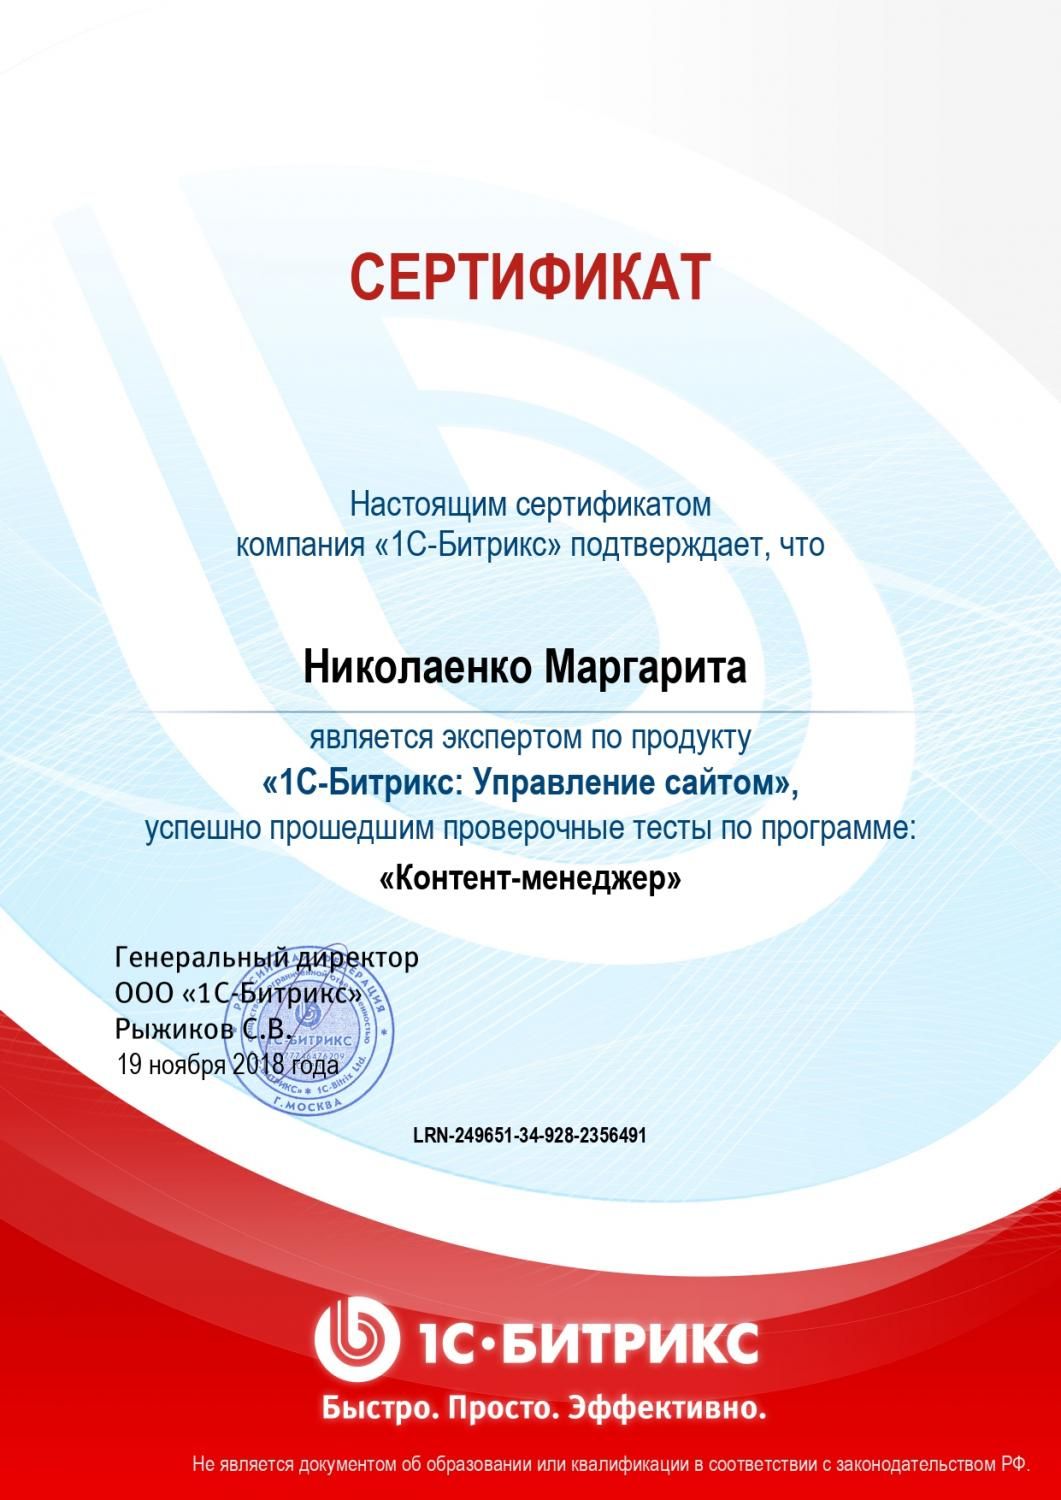 Сертификат эксперта по программе "Контент-менеджер" - Николаенко М. в Нижнего Тагила